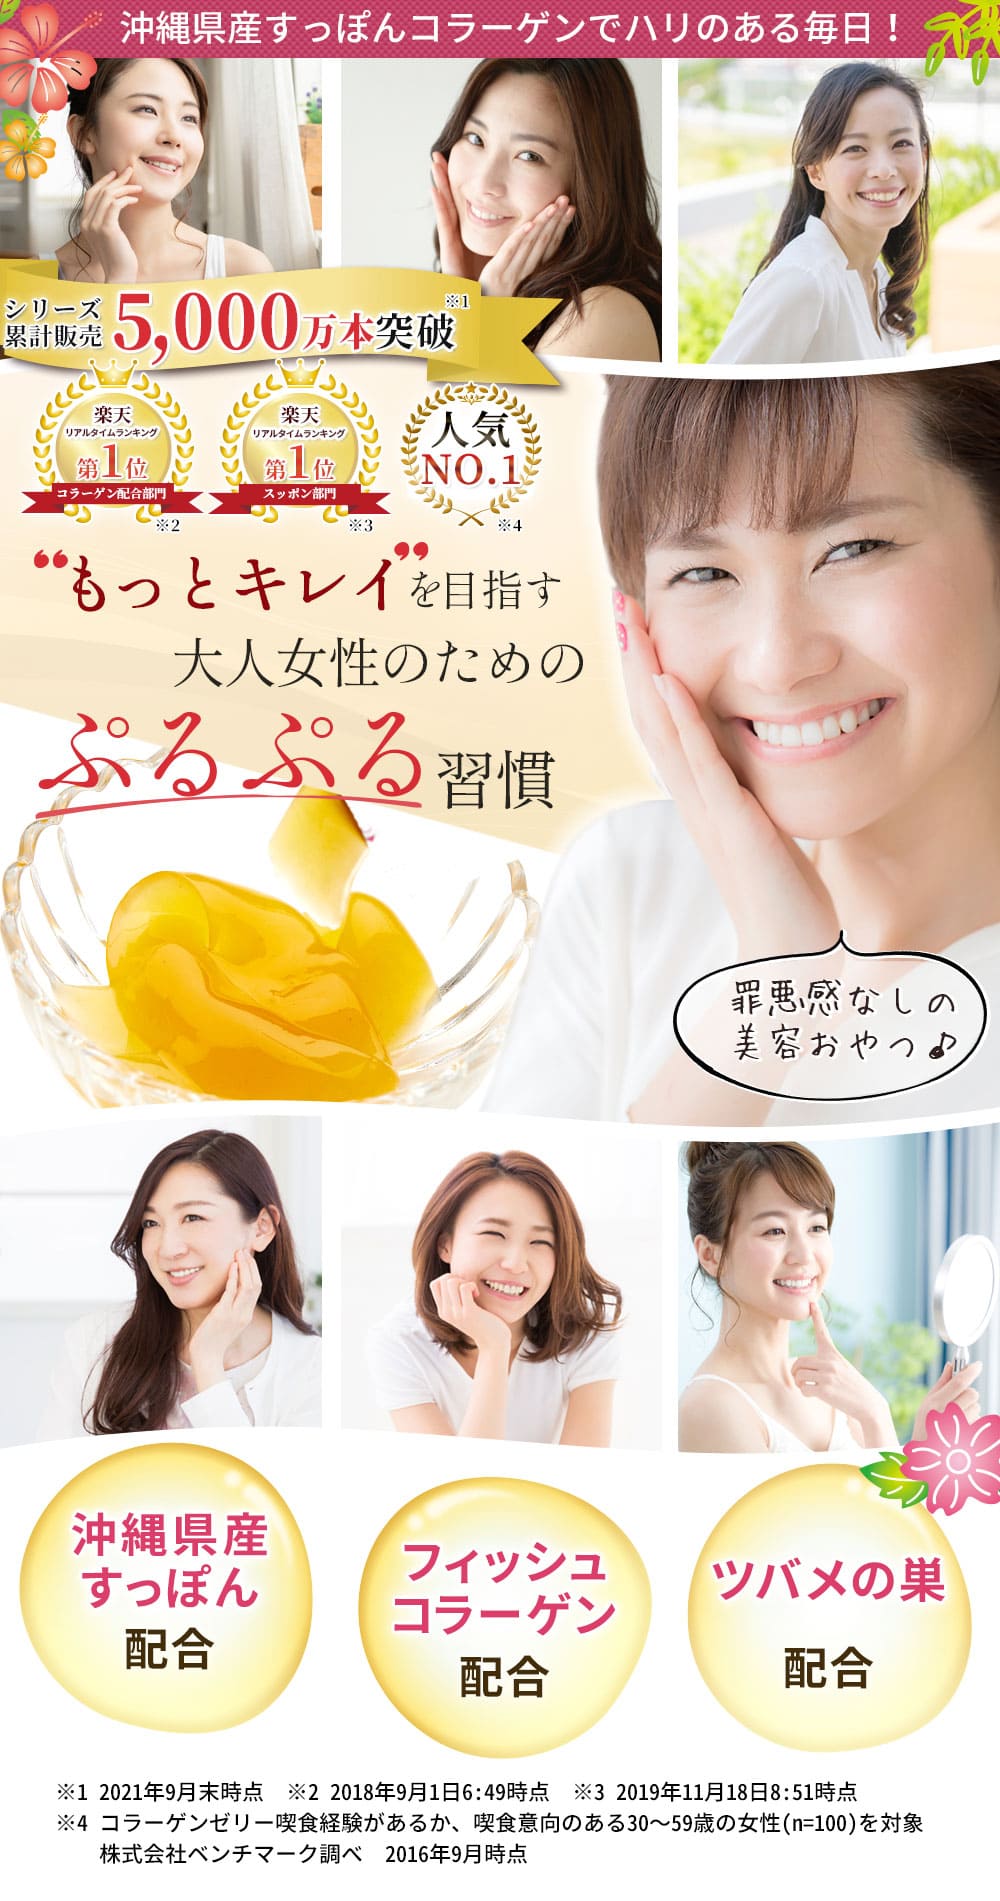 「琉球すっぽんのコラーゲンゼリー」はもっとキレイを目指す大人女性のためのぷるぷる習慣